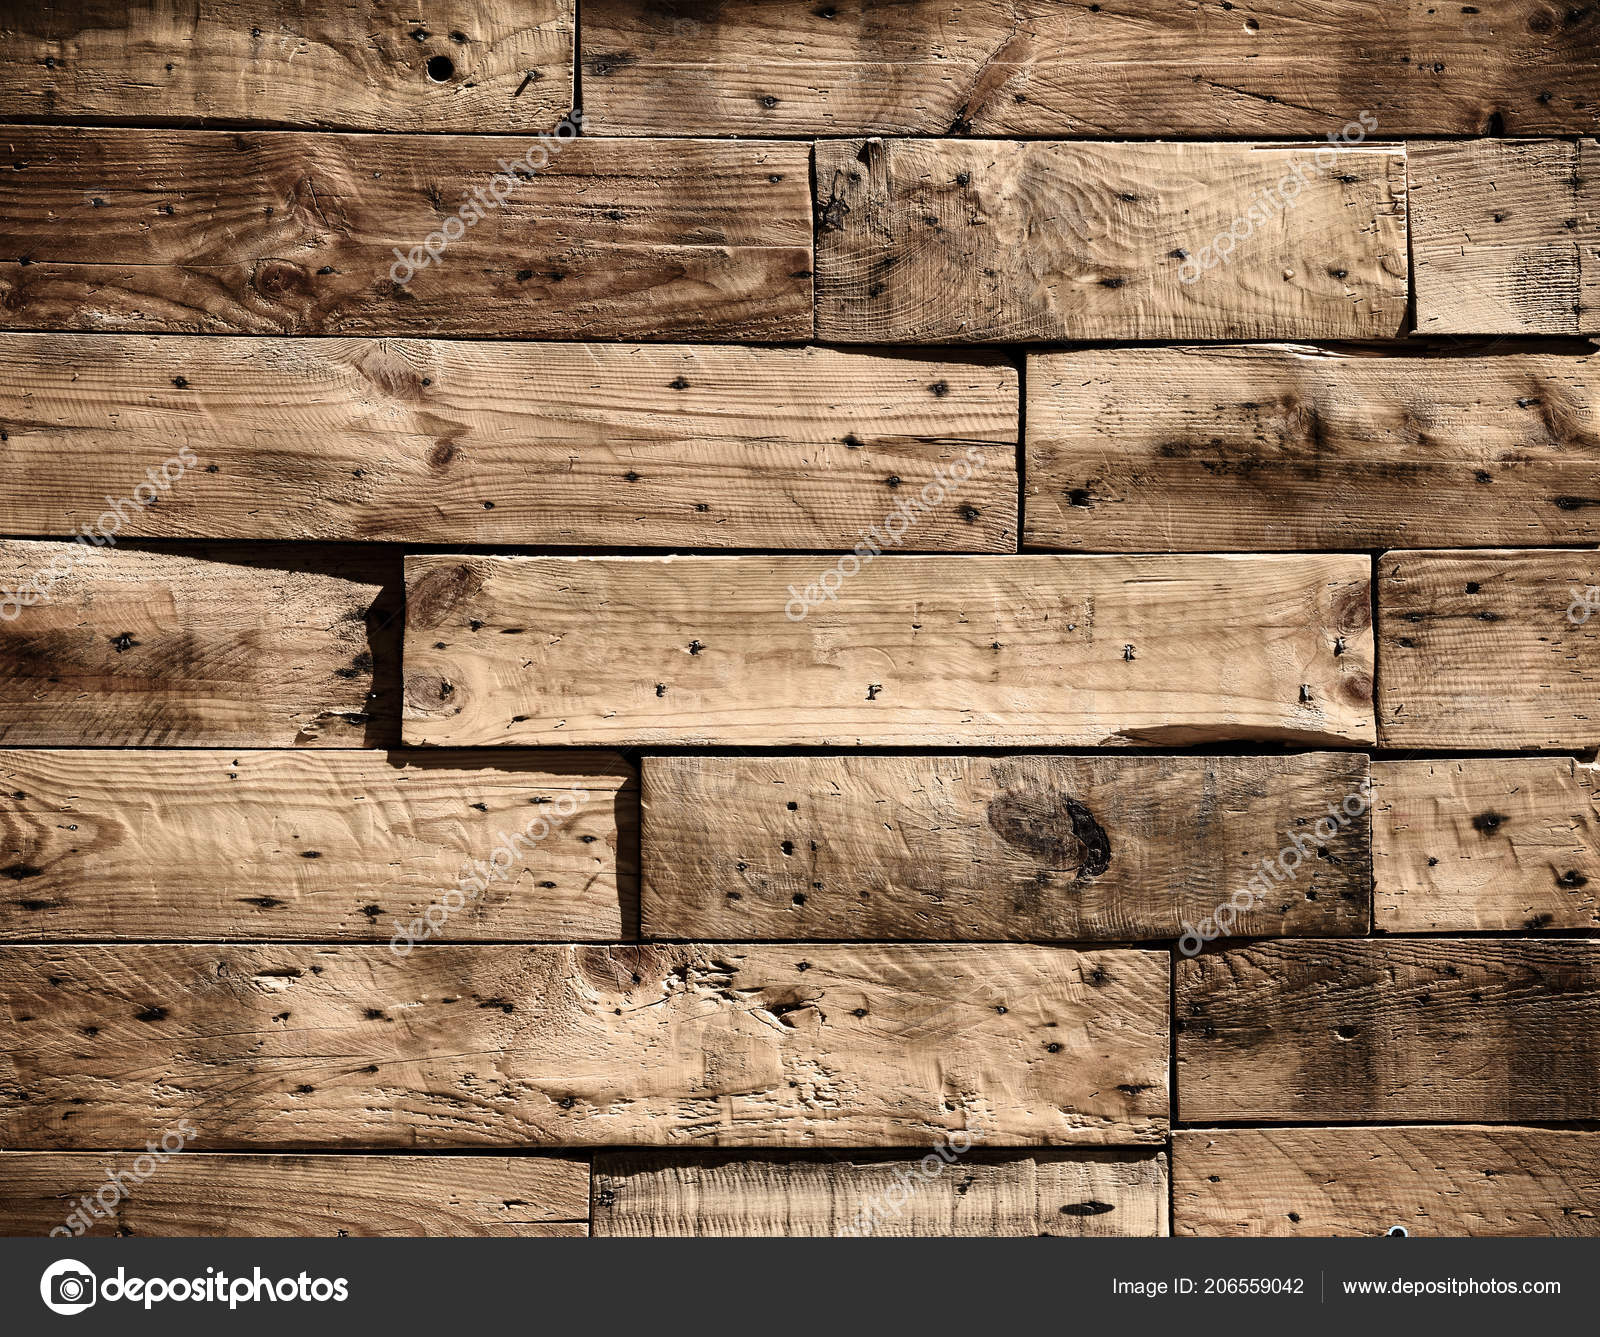 Nền gỗ xếp lát: Nền gỗ xếp lát mang đến cho không gian của bạn một vẻ đẹp tự nhiên và ấm áp. Sự kết hợp giữa các miếng gỗ được xếp lát tạo nên sự đồng đều và chắc chắn, tạo nên một bề mặt đẹp mắt và dễ dàng vệ sinh.